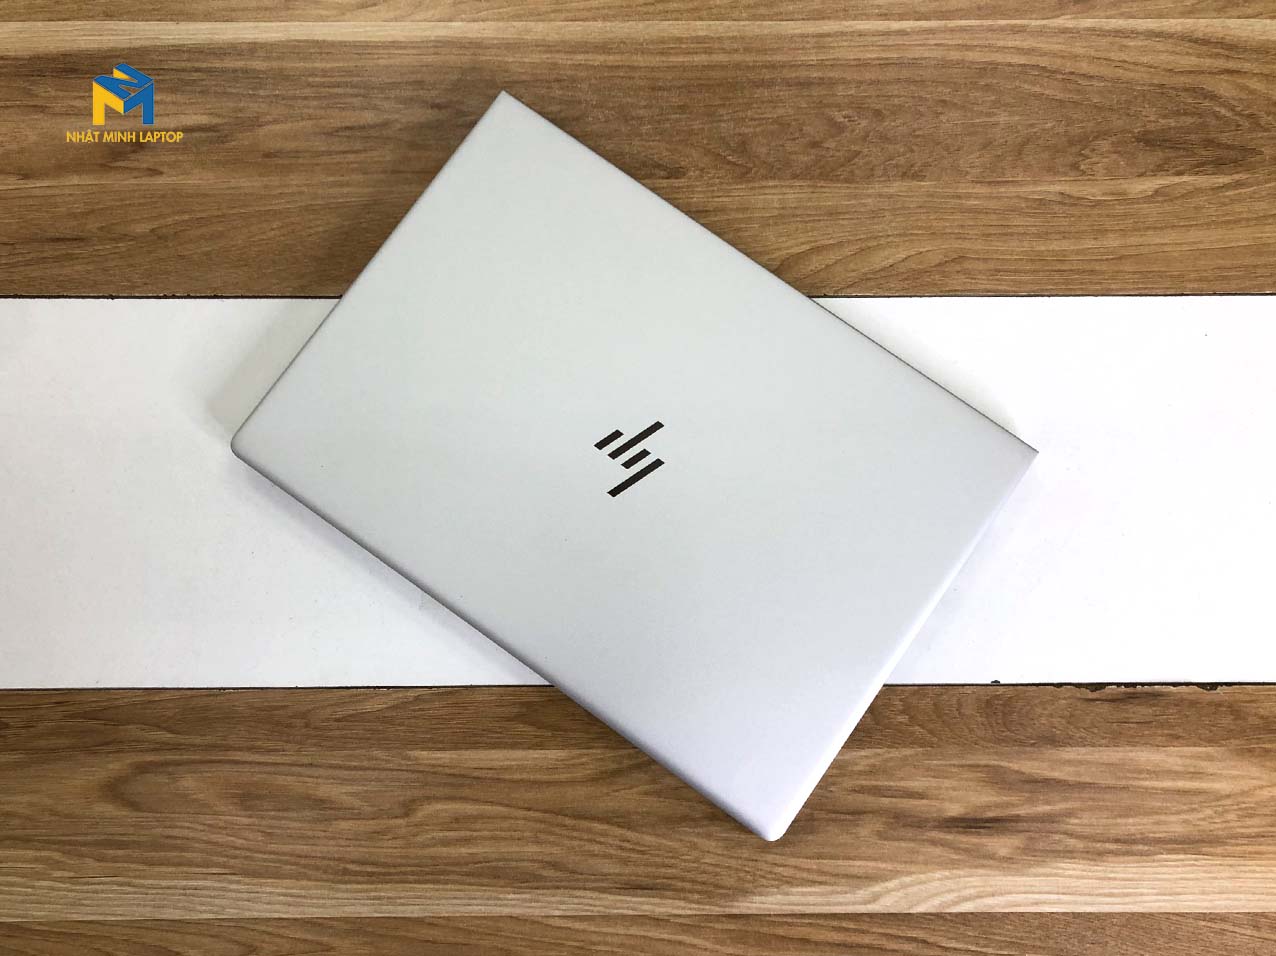 thiết kế laptop hp elitebook 745 g6